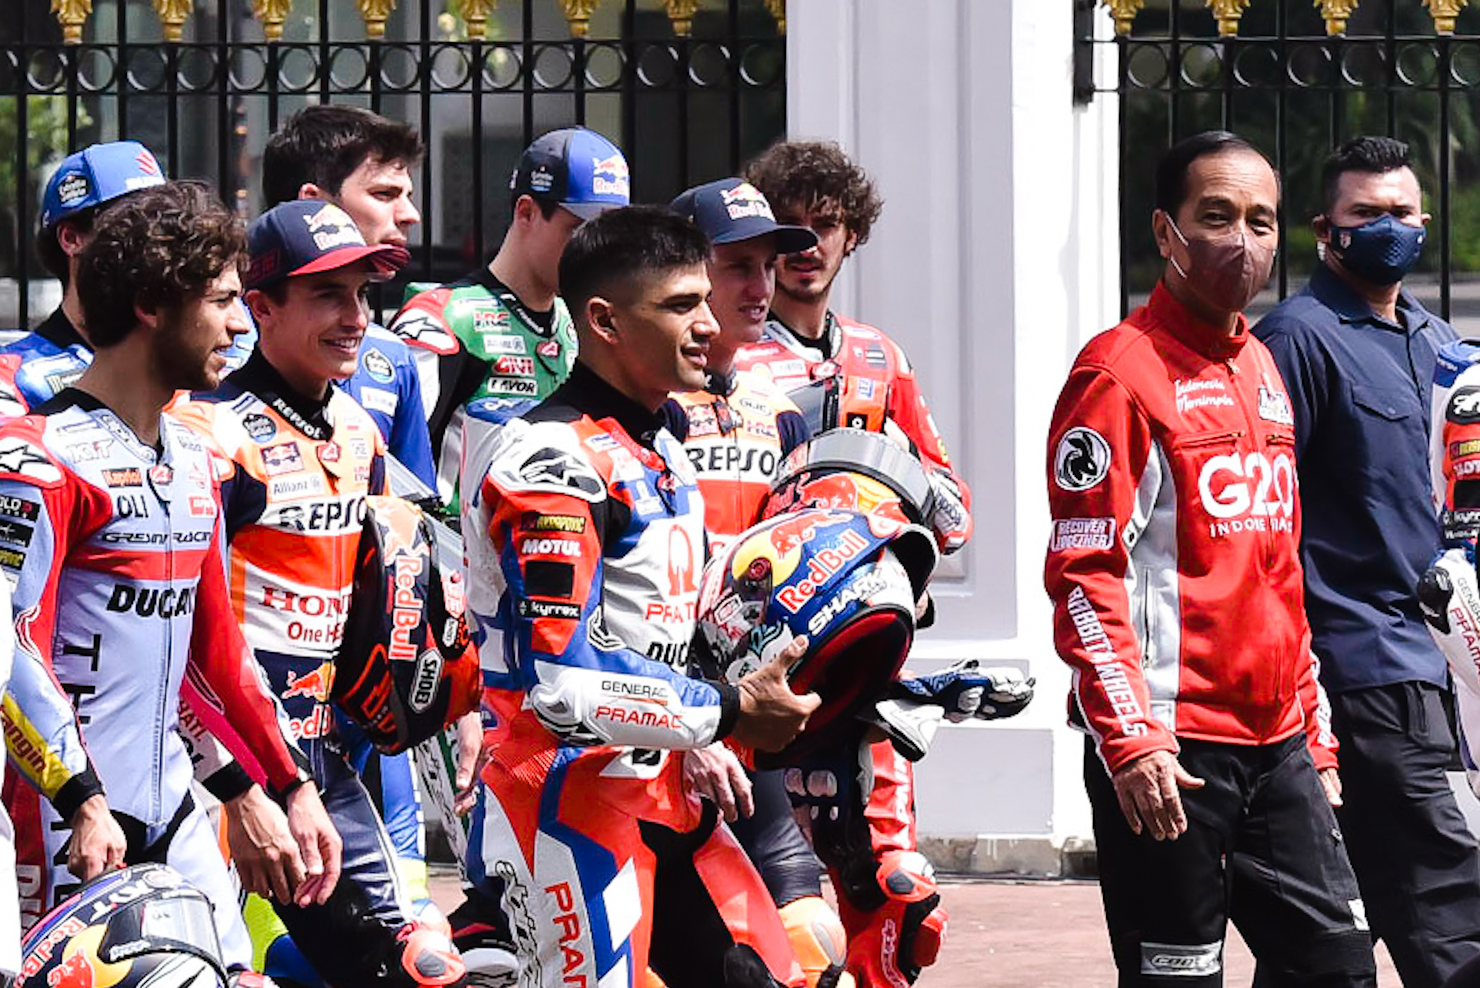 Presiden Jokowi Ungkap Pada Pembalap MotoGP, Sirkuit Mandalika Gak Kalah Sama Sirkuit Negara Lain